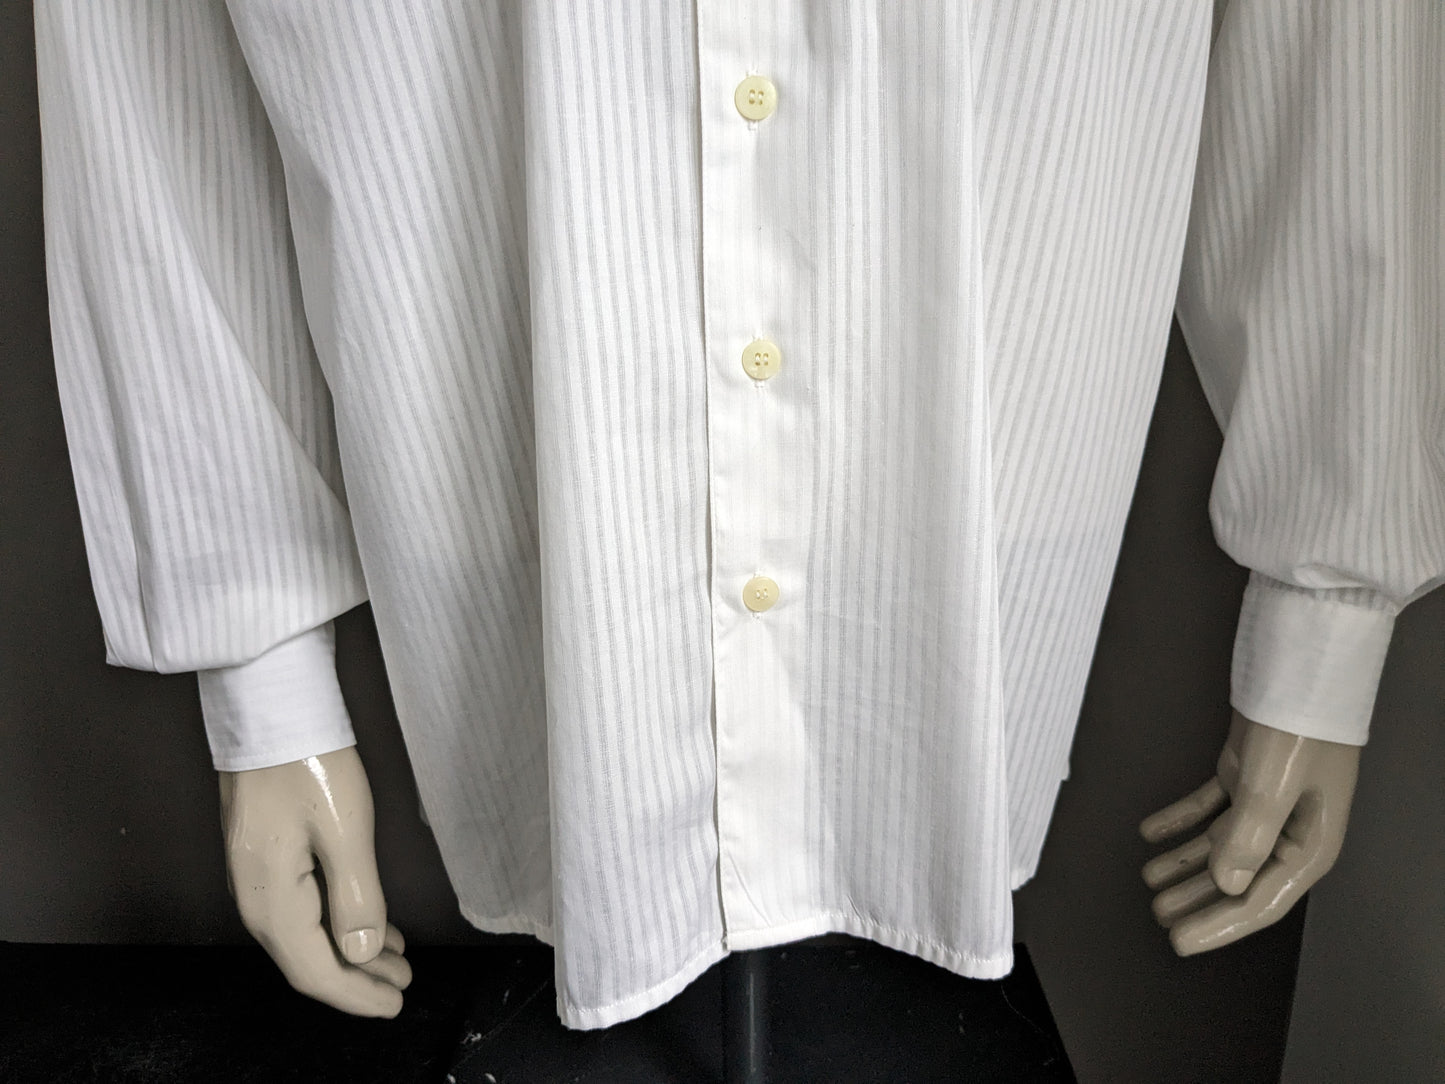 Camisa globa de globo vintage con mao / cuello de pie. Rayado blanco. Tamaño xxl / 2xl